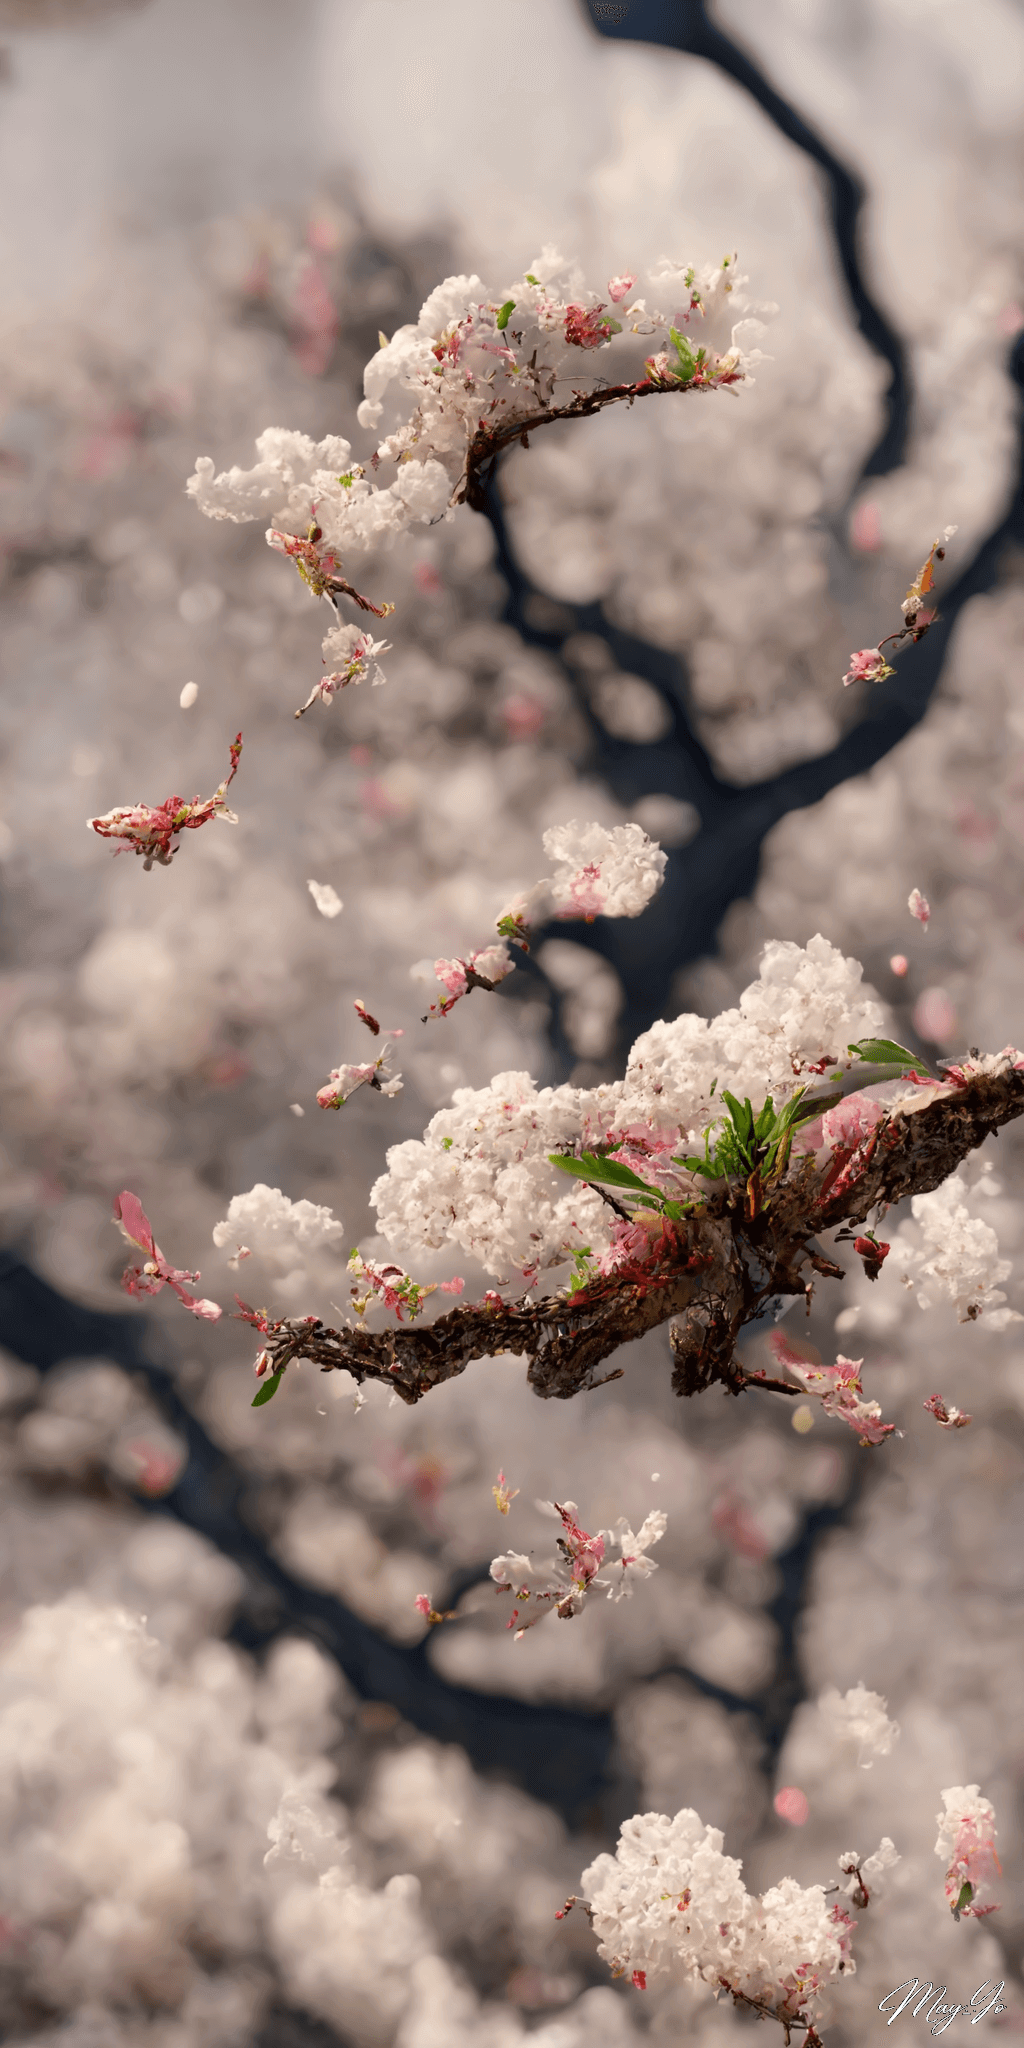 龍の遺伝子を持つ幻の桜の壁紙イラスト 龍と桜をイメージした待受 AIイラスト待受 縦長画像 phoenix dragon cherryblossom illustration fantasy sakura tree blooming